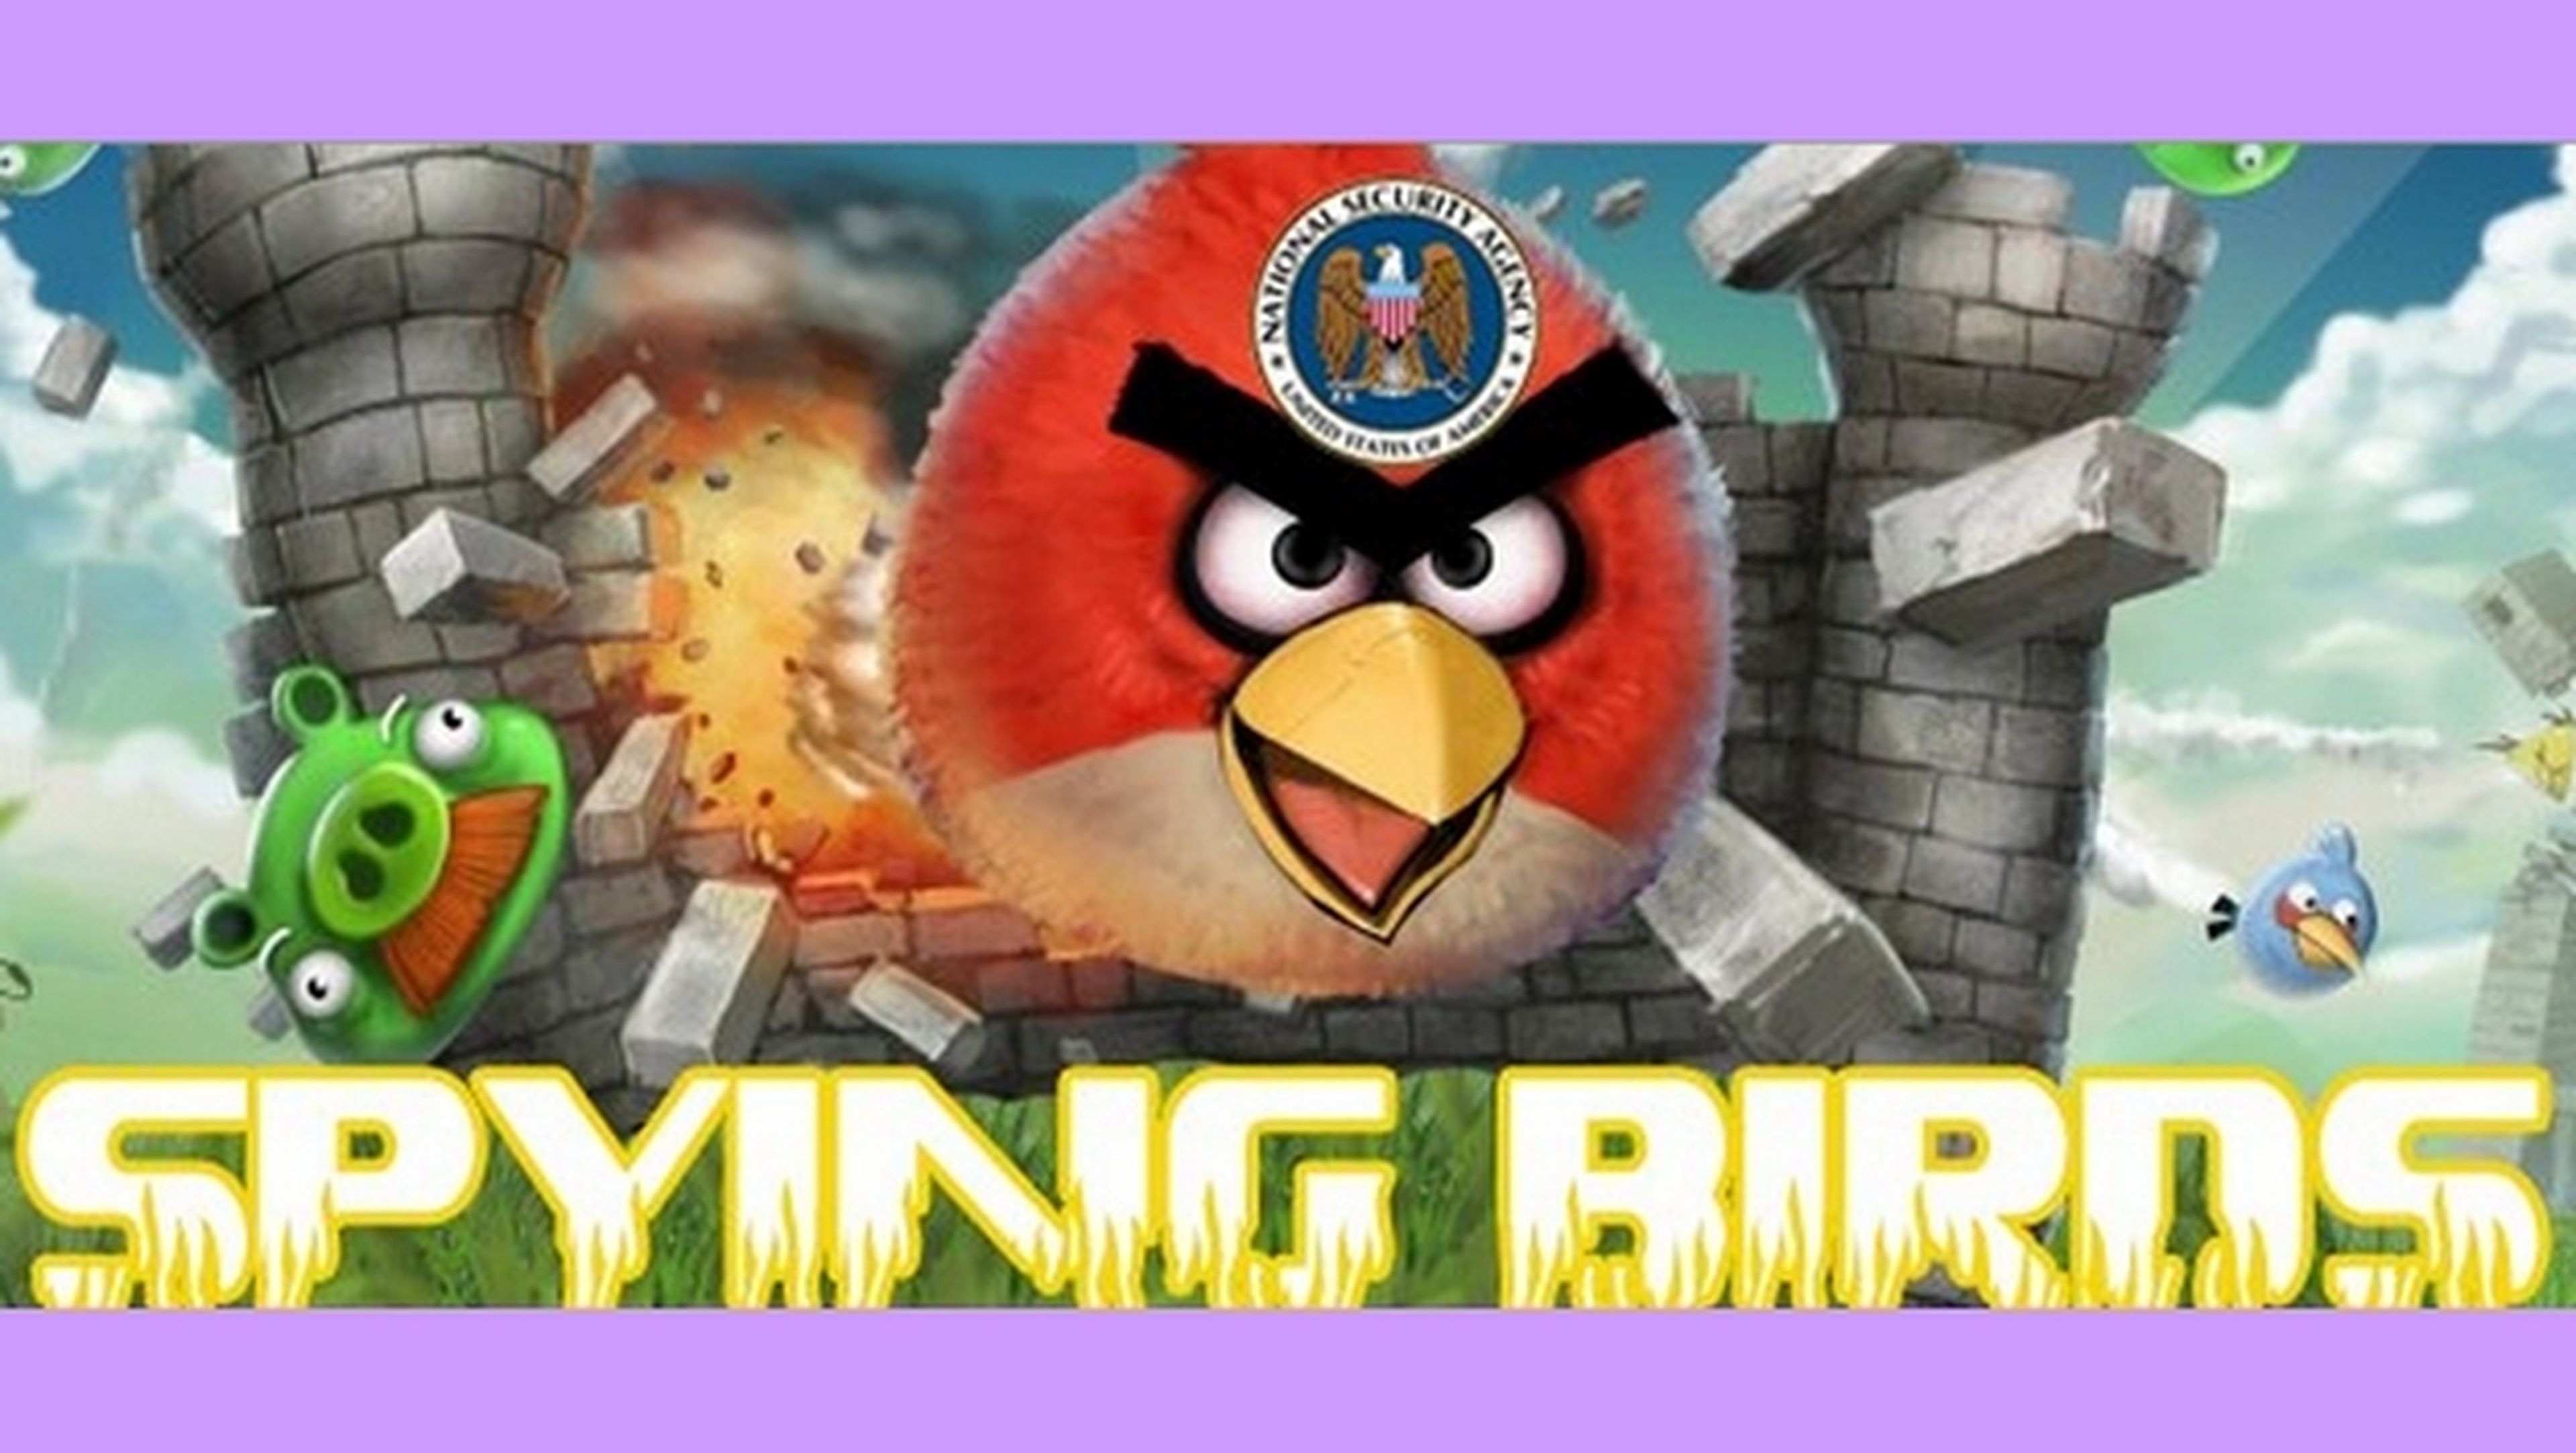 La web de Angry Birds, hackeada. Durante unos minutos se llamó Spying Birds